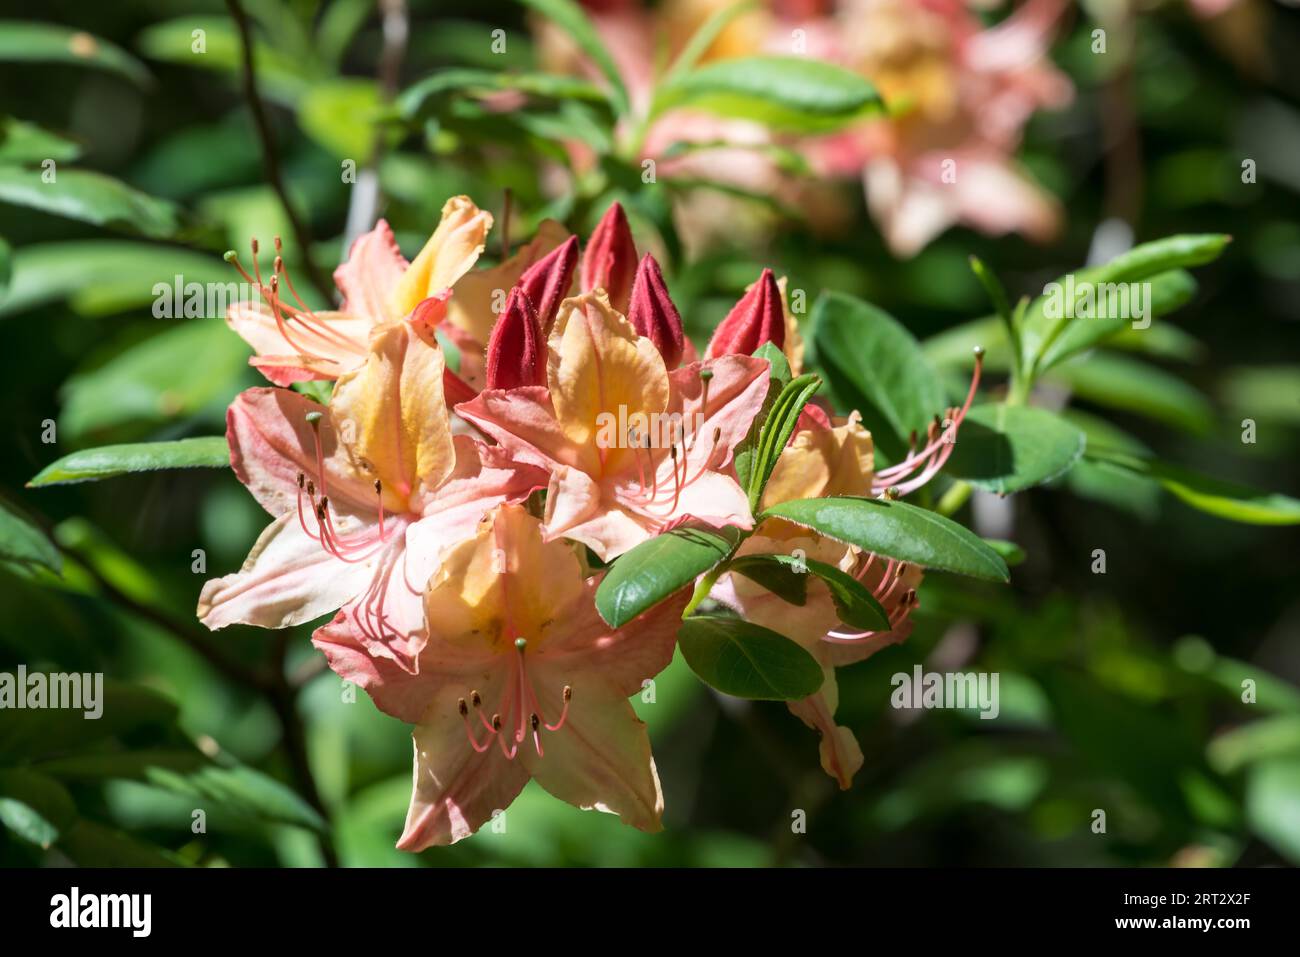 Rhododendron shrub Stock Photo